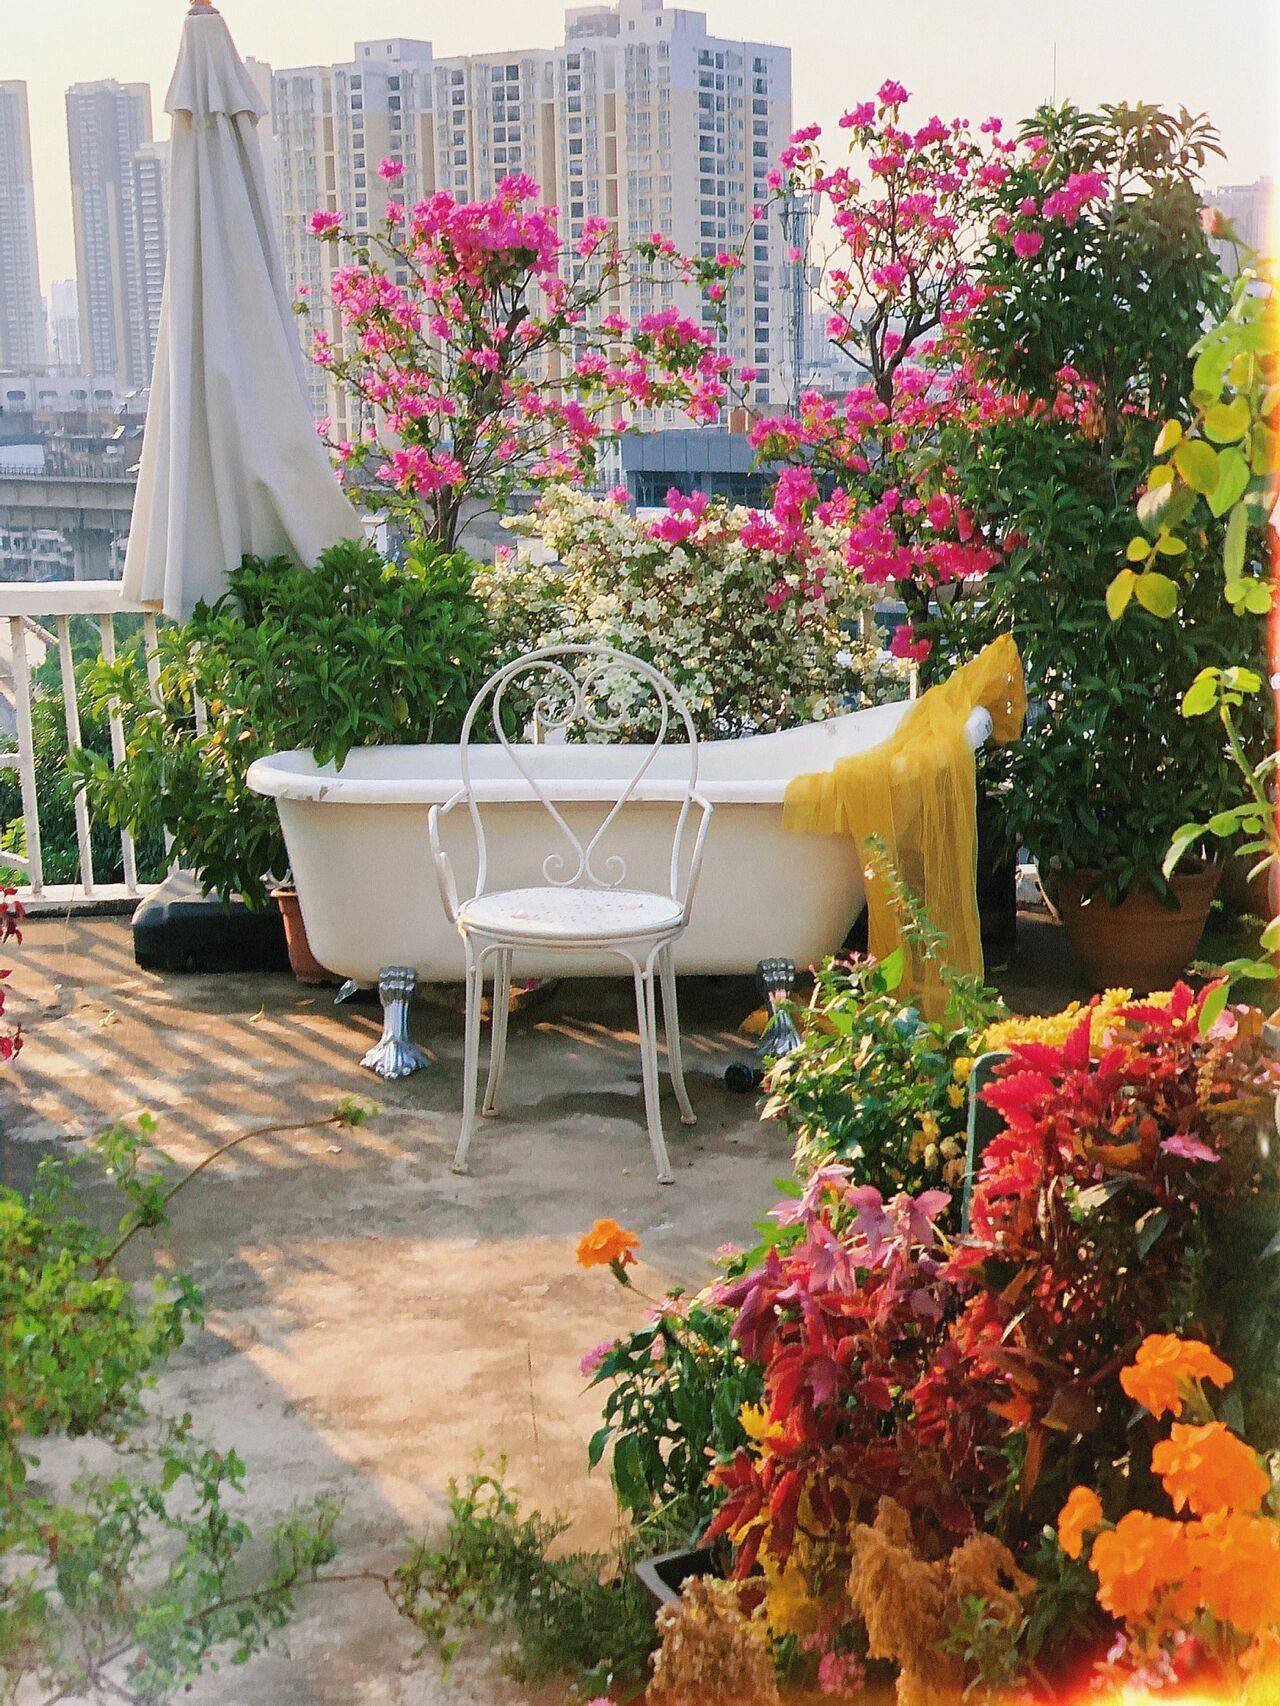 Đam mê với việc trồng hoa, cô gái 27 tuổi thuê nhà trên sân thượng để tạo ra khu vườn đẹp như tranh vẽ- Ảnh 3.